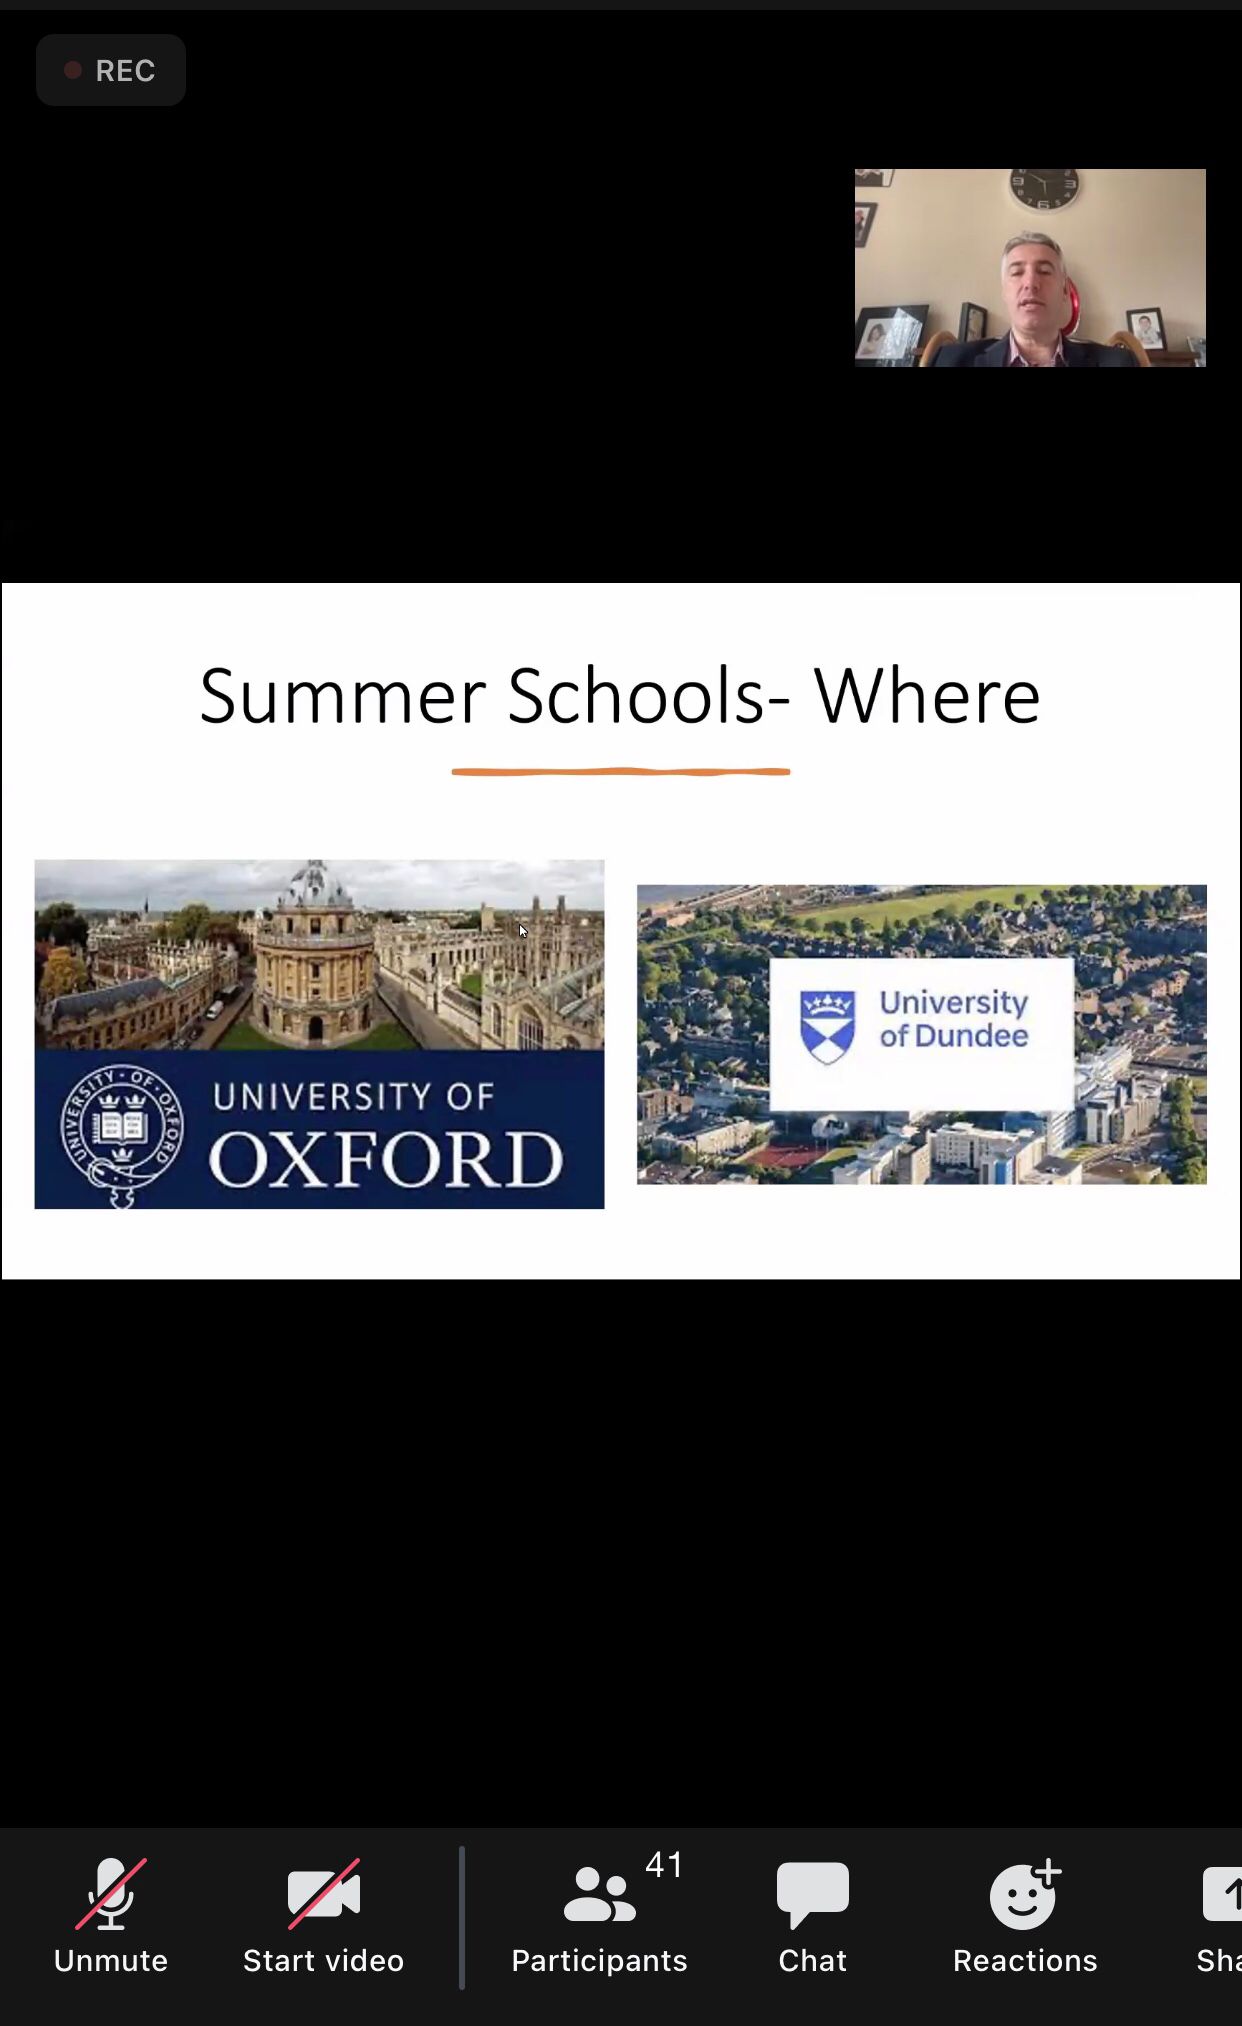 كلية الطب في الجامعة تعلن عن انطلاق التحضيرات للدورة الصيفية الثانية في جامعتي أوكسفورد وداندي في بريطانيا